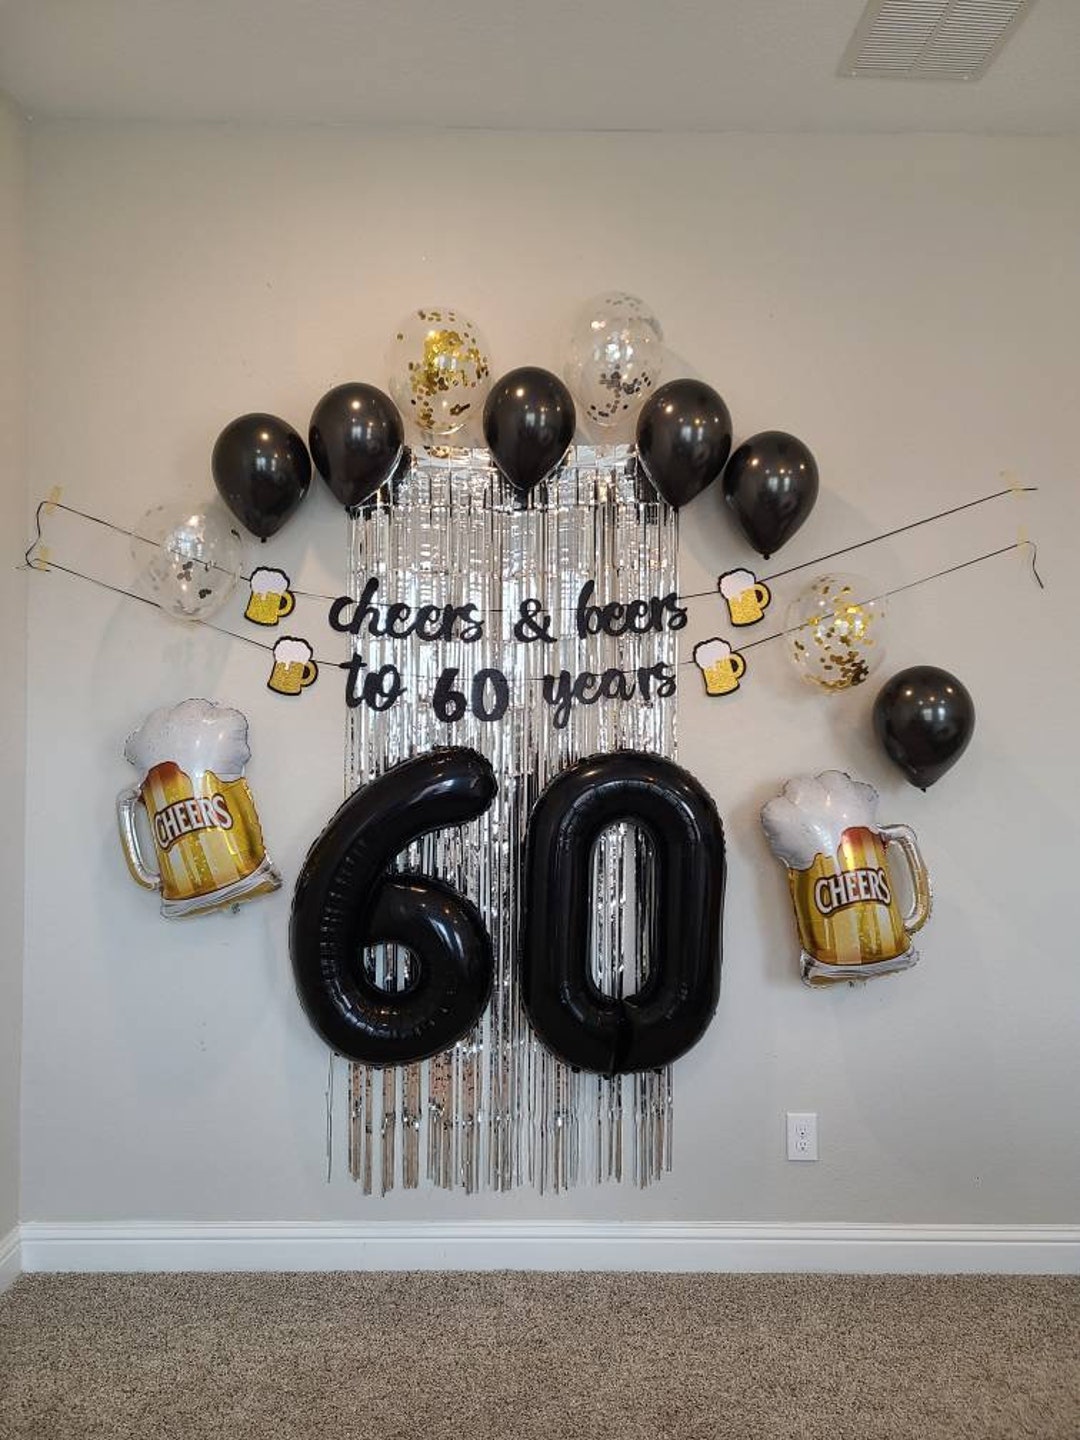 Fiesta 60 años con globos.  Decoración de unas, Decoración con globos,  Globos